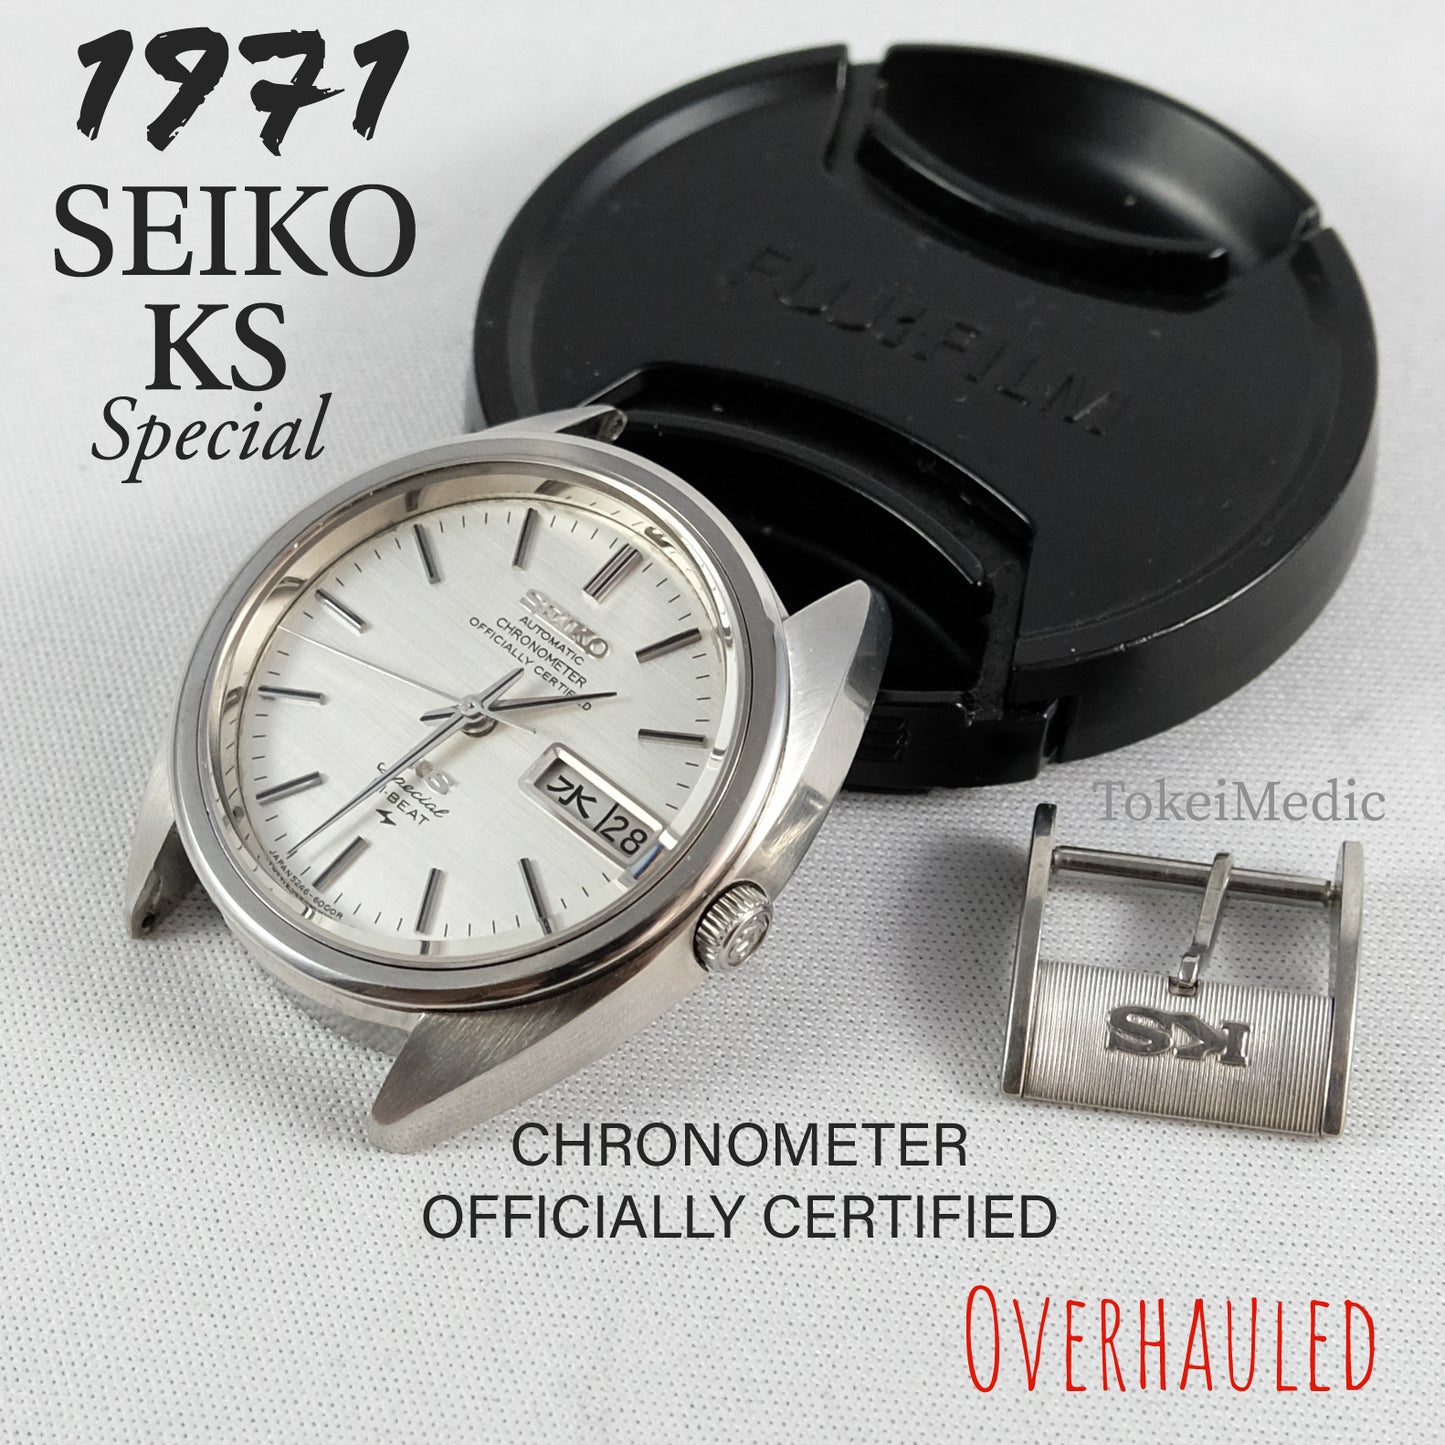 1971 Seiko KS Special 5246-6000